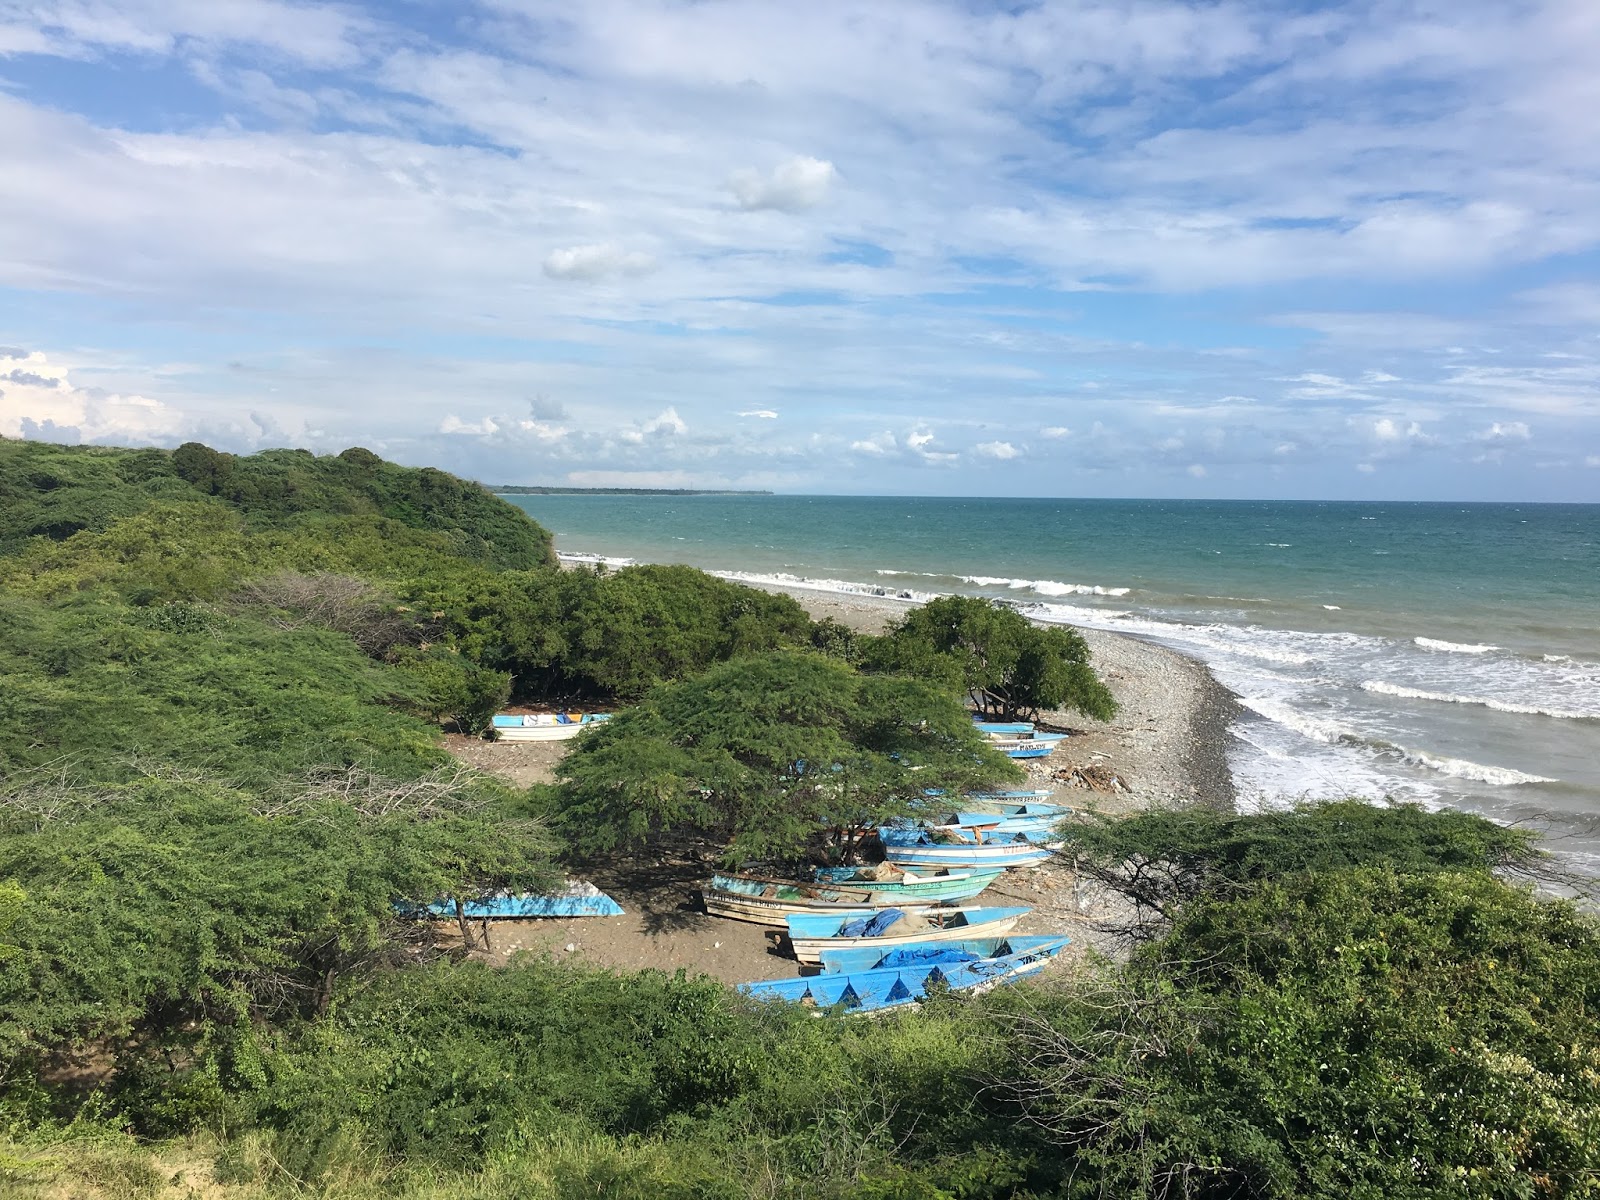 Valokuva Playa Matanzasista. sisältäen tilava ranta